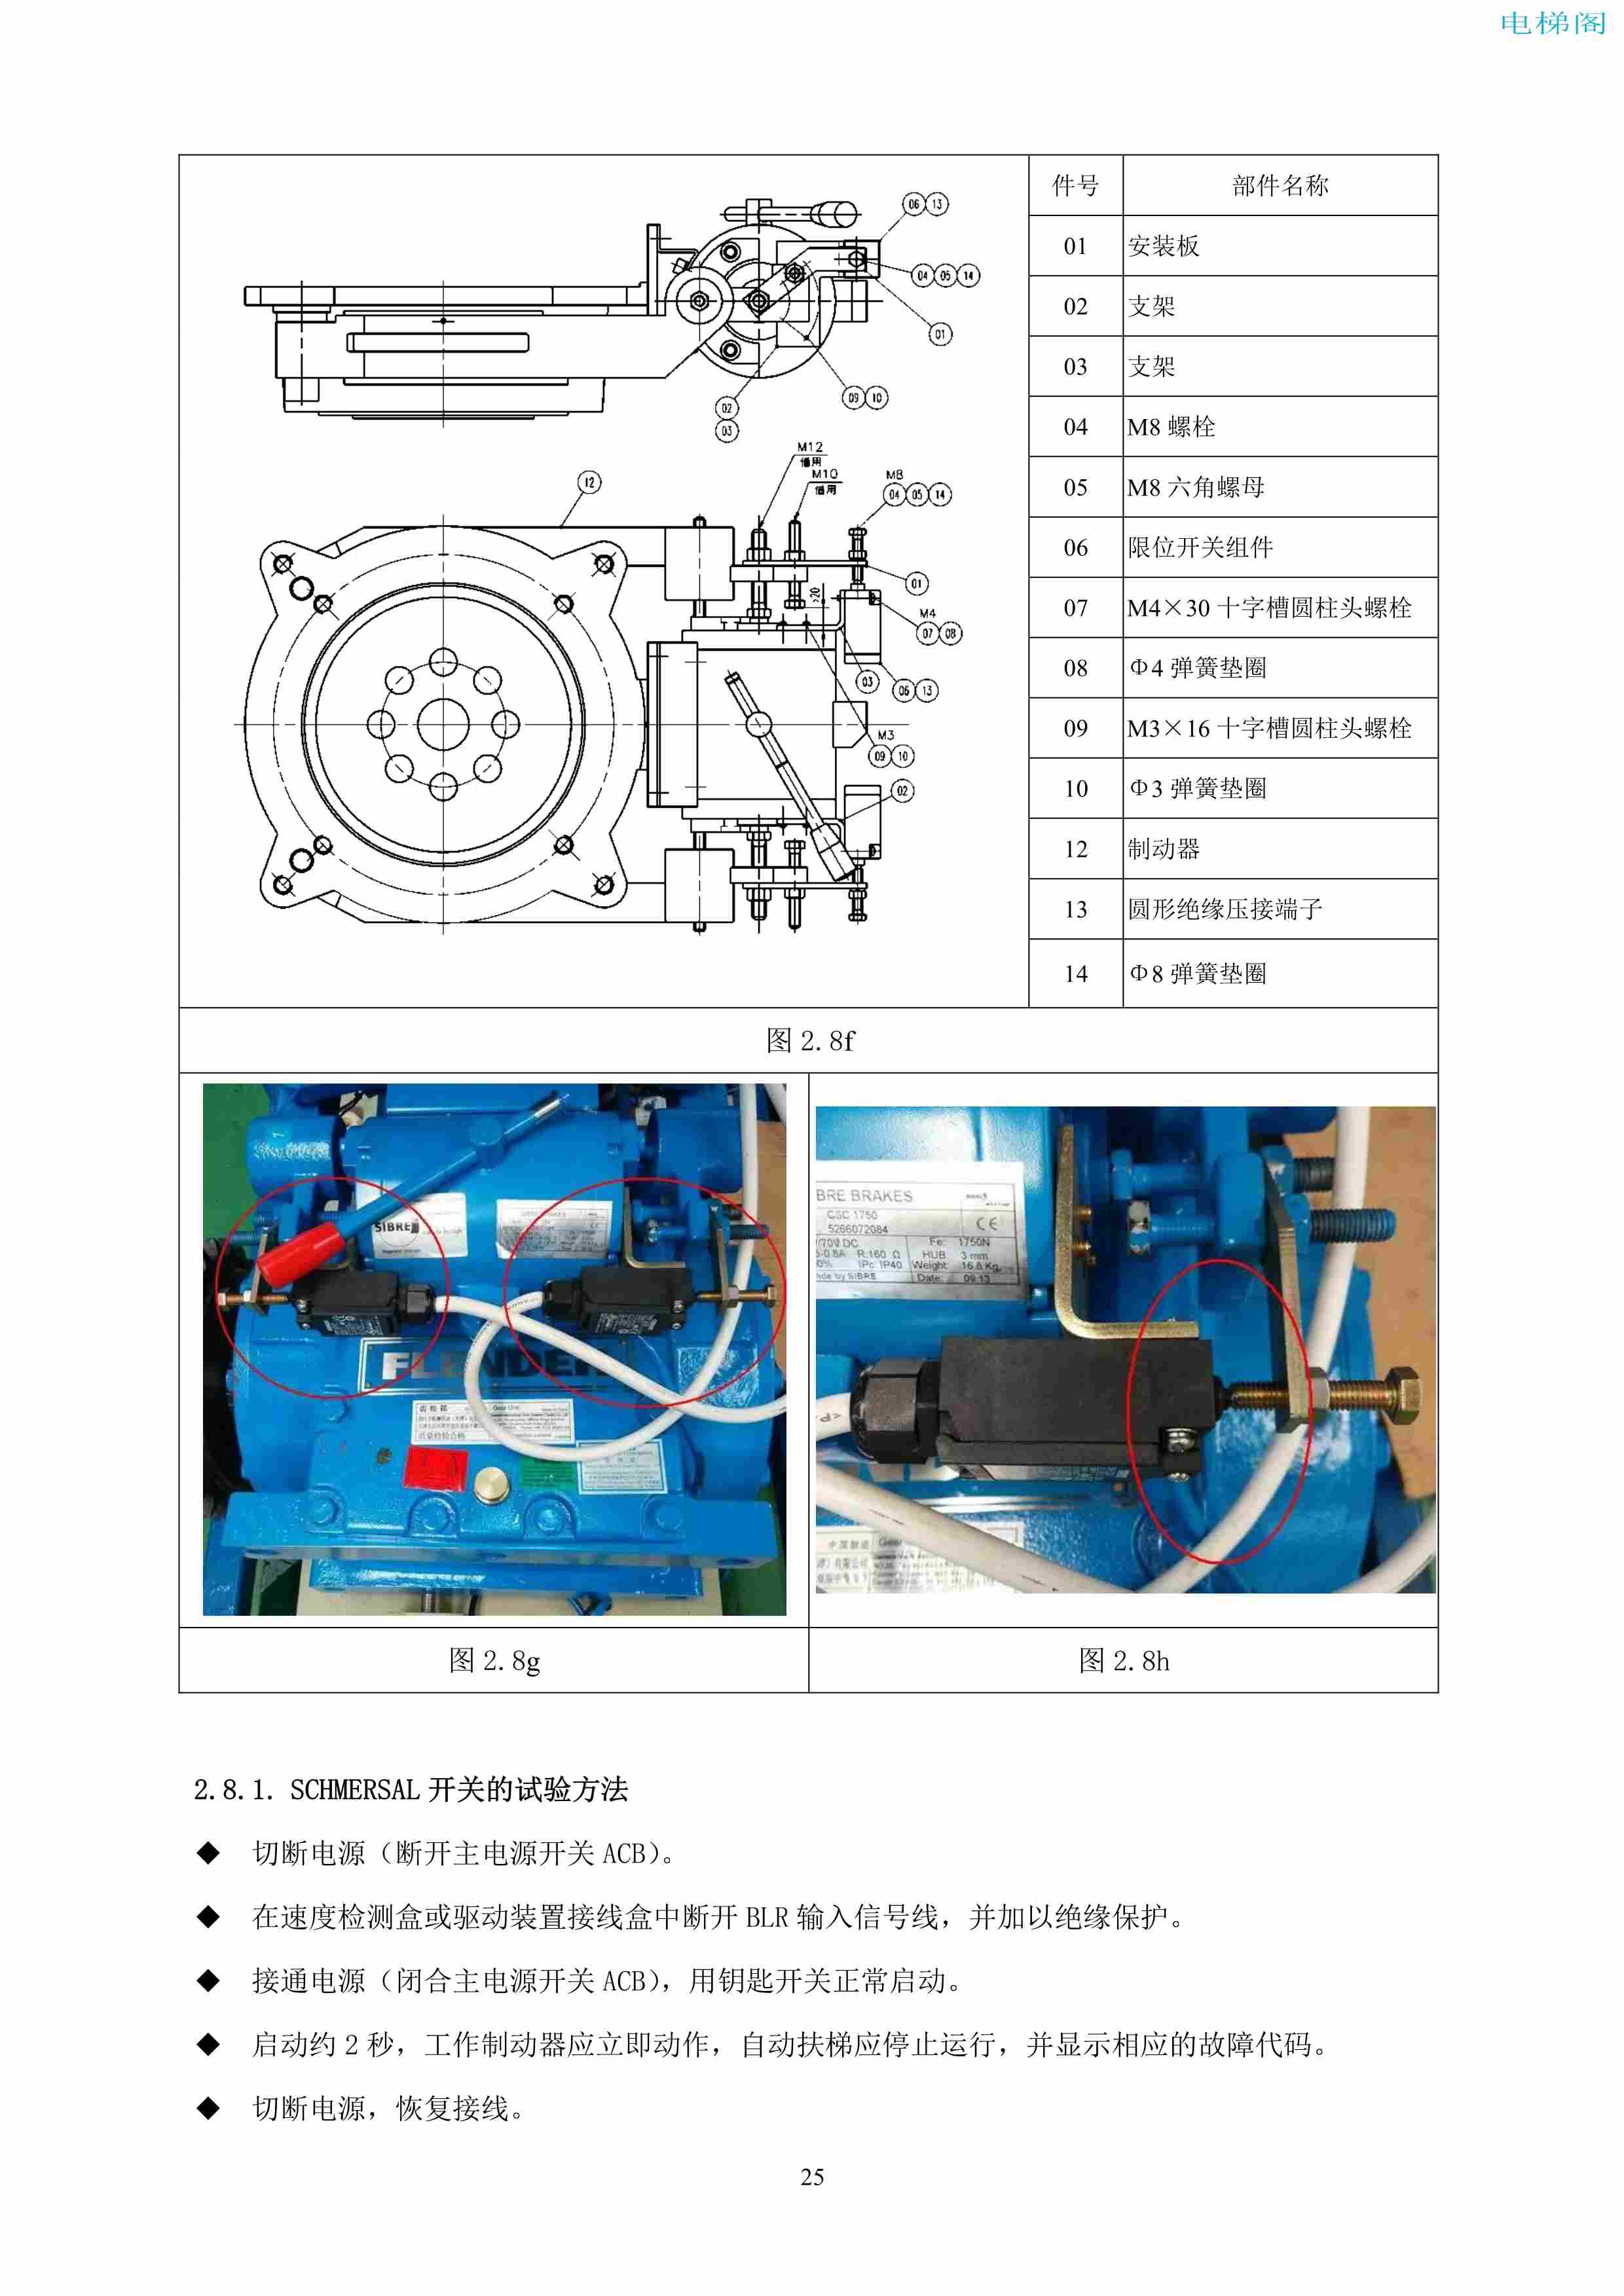 上海三菱电梯有限公司自动扶梯制动器维护作业要领汇编_26.jpg